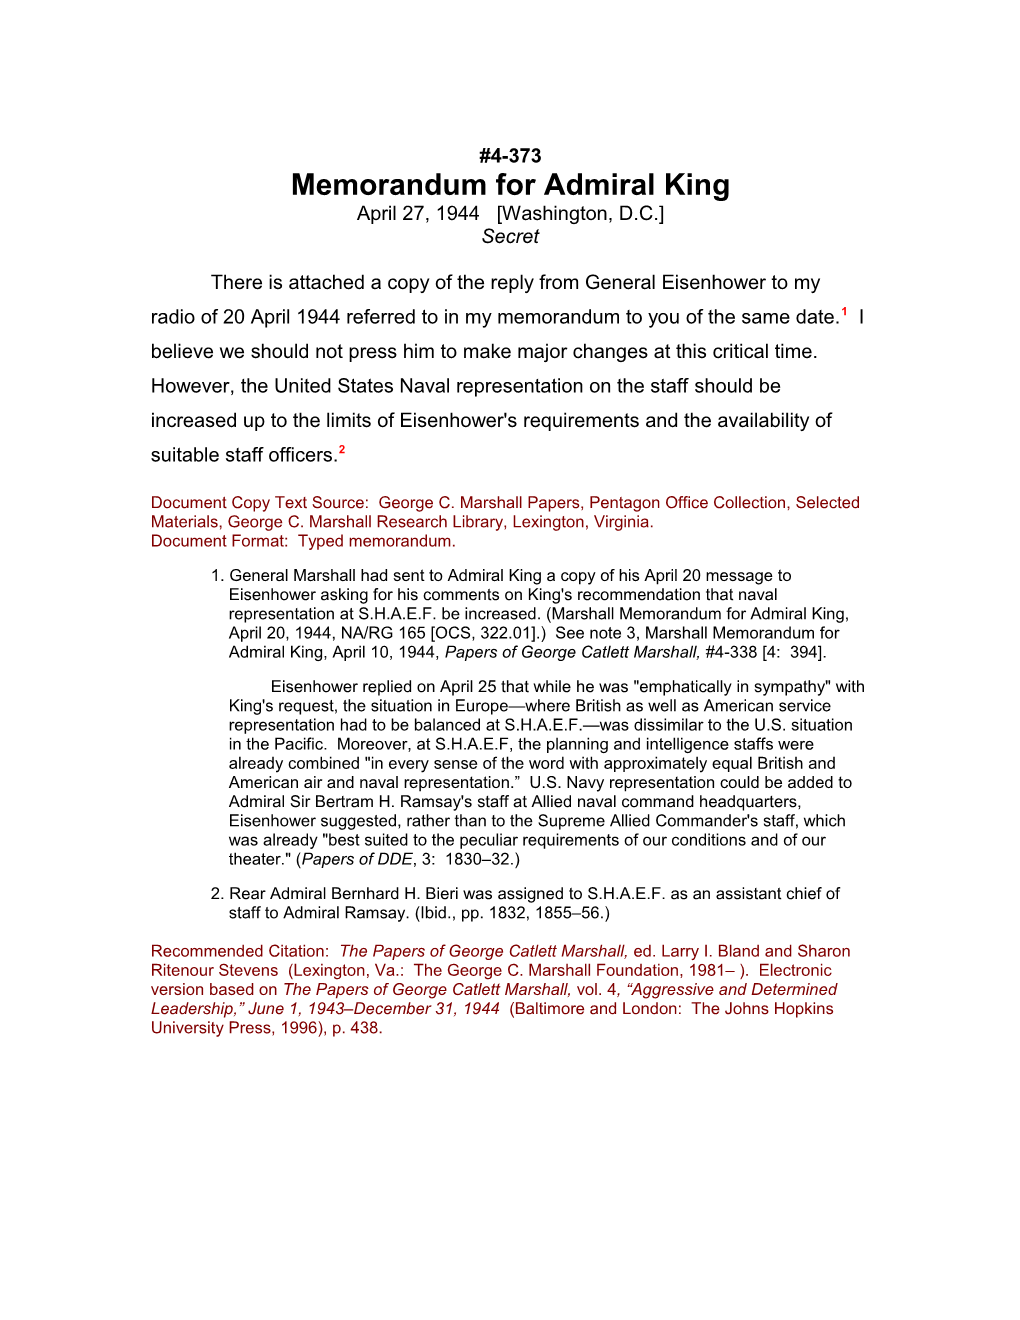 Memorandum for Admiral King s2